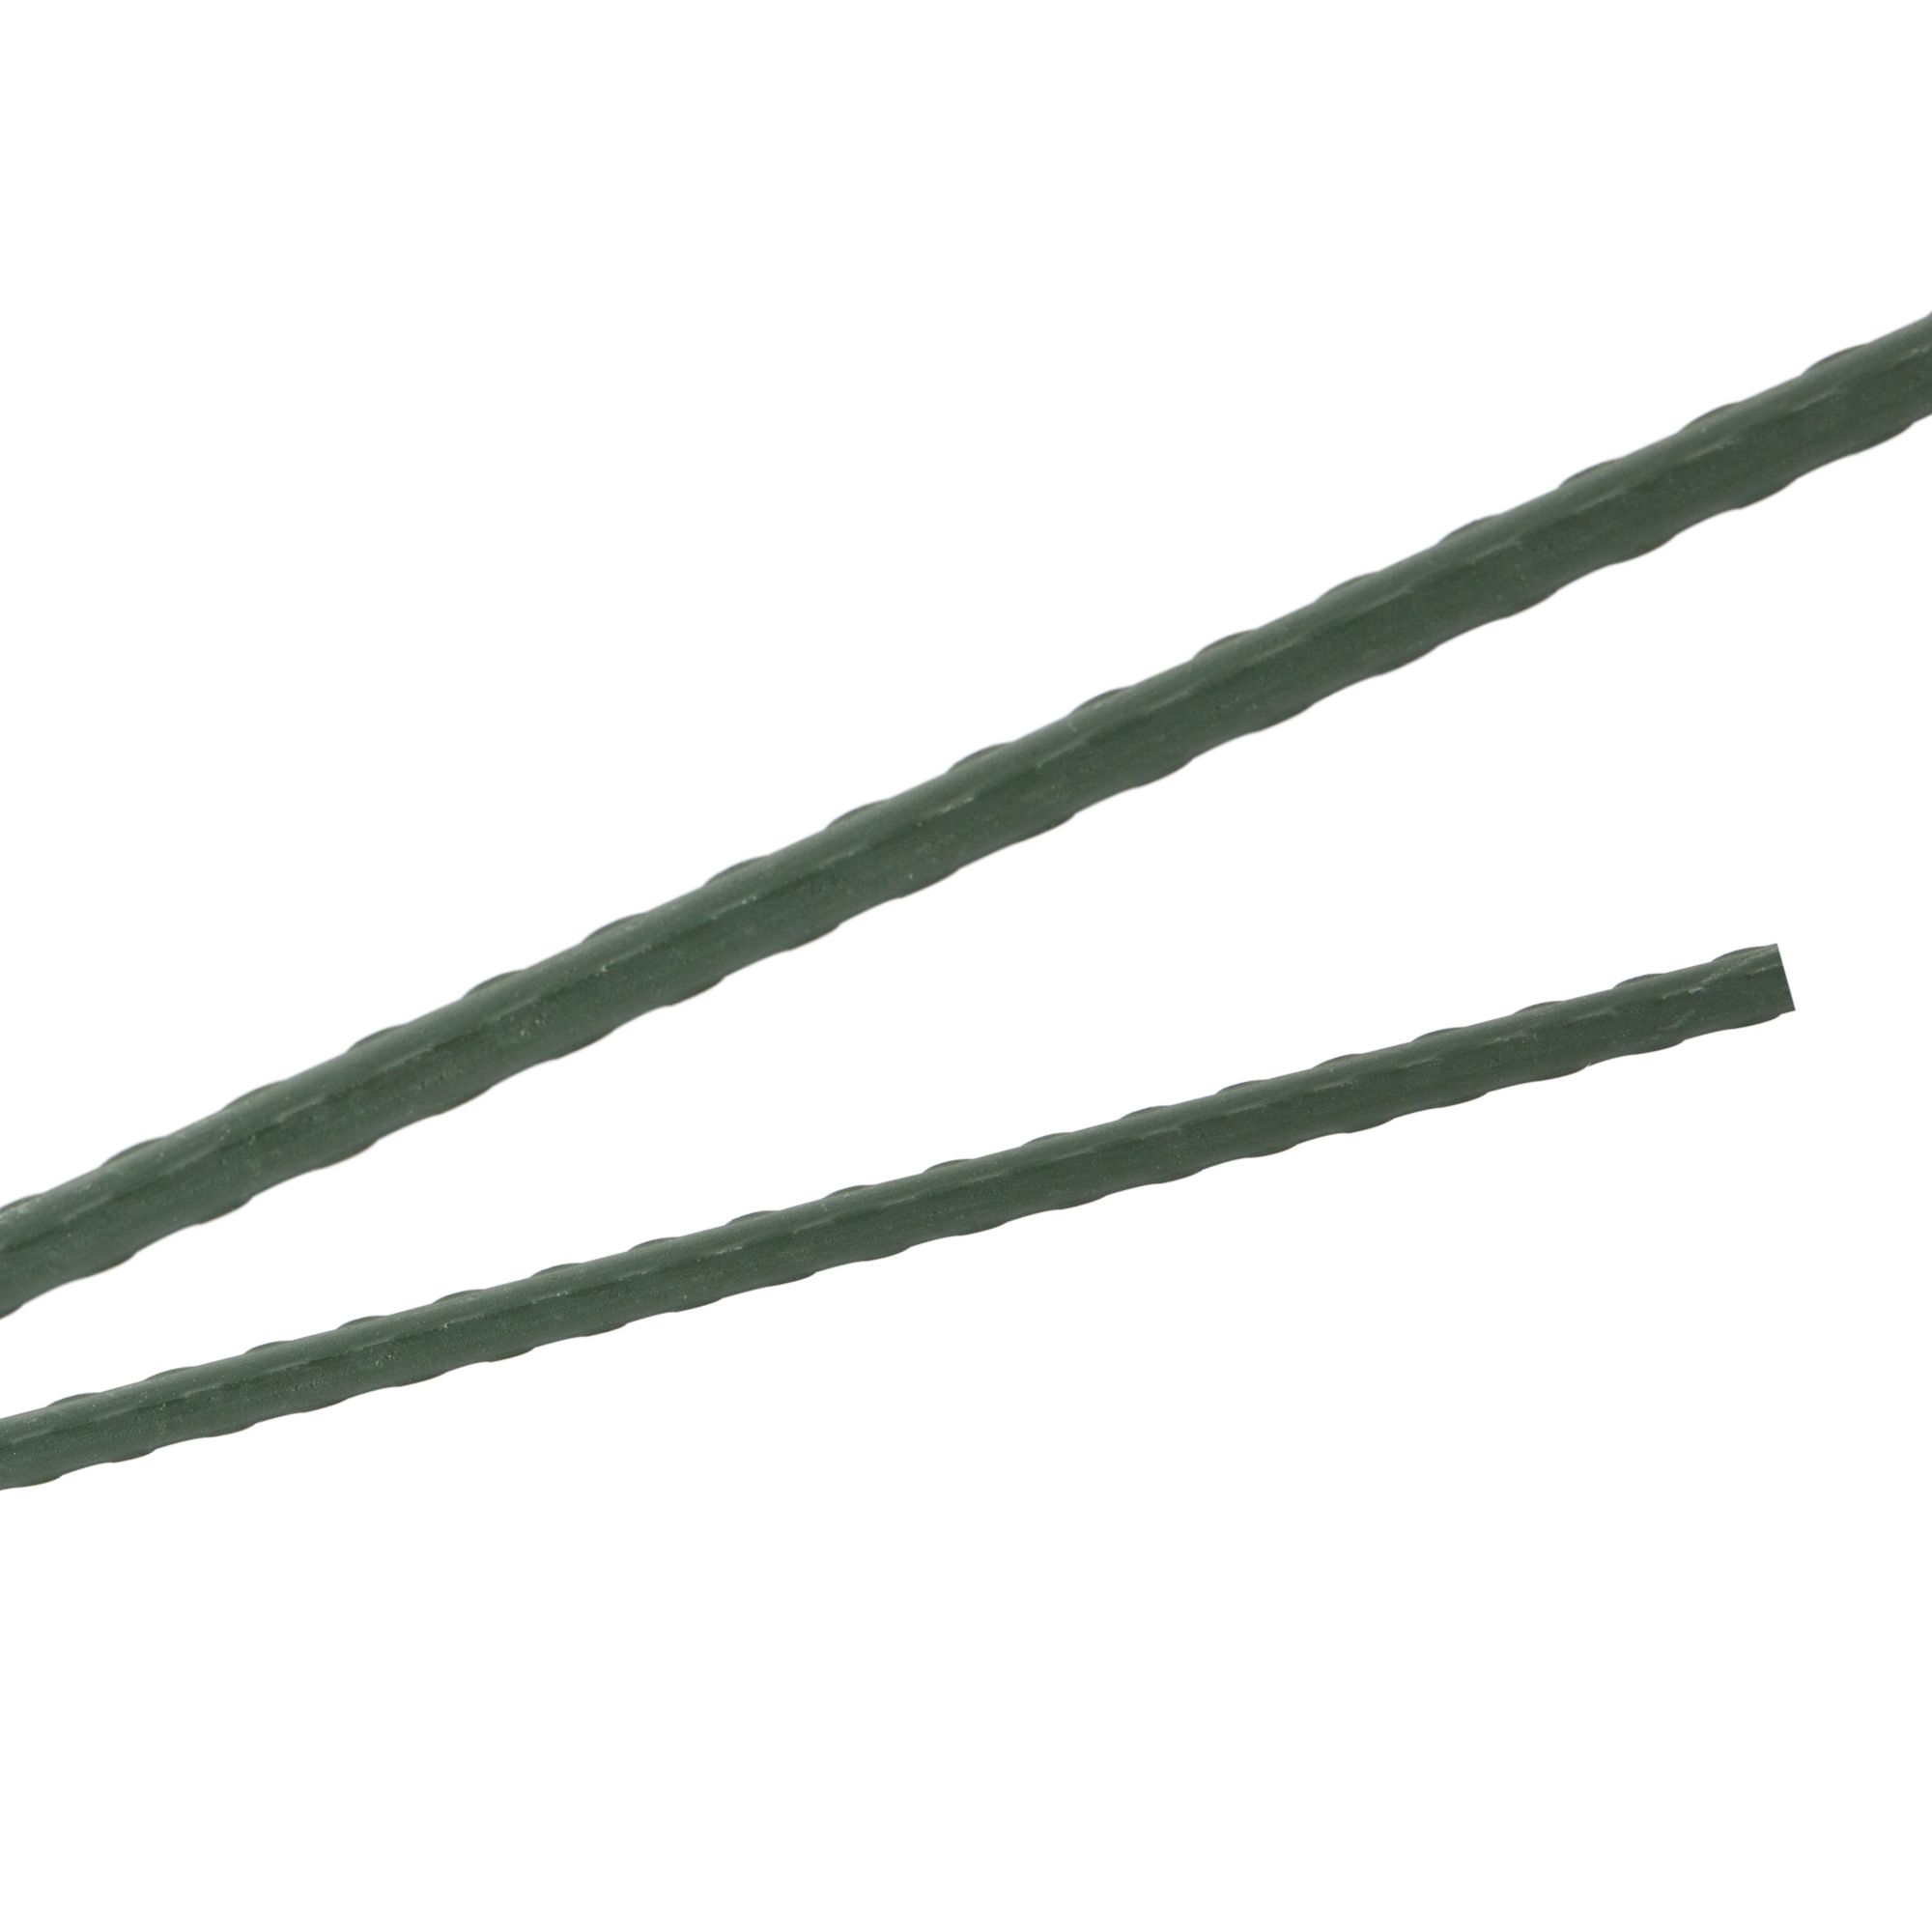 Tyč podpěrná, 11mm, 120cm, kov+PVC, zelená 0.088000 Kg GIGA Sklad20 45654 123